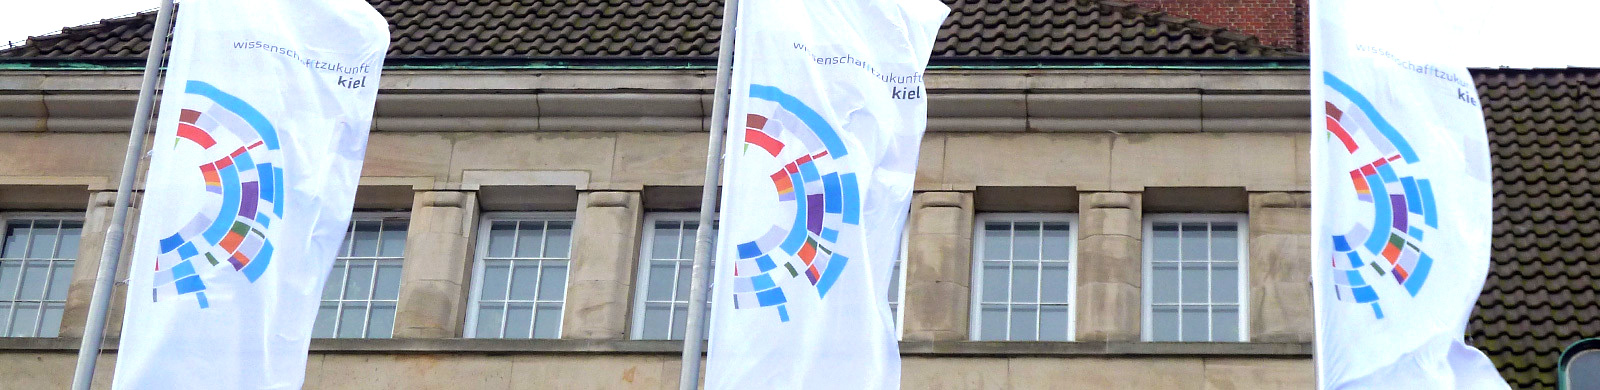 Fahnen mit Wissenschaftzukunft-Logo vor dem Kieler Rathaus